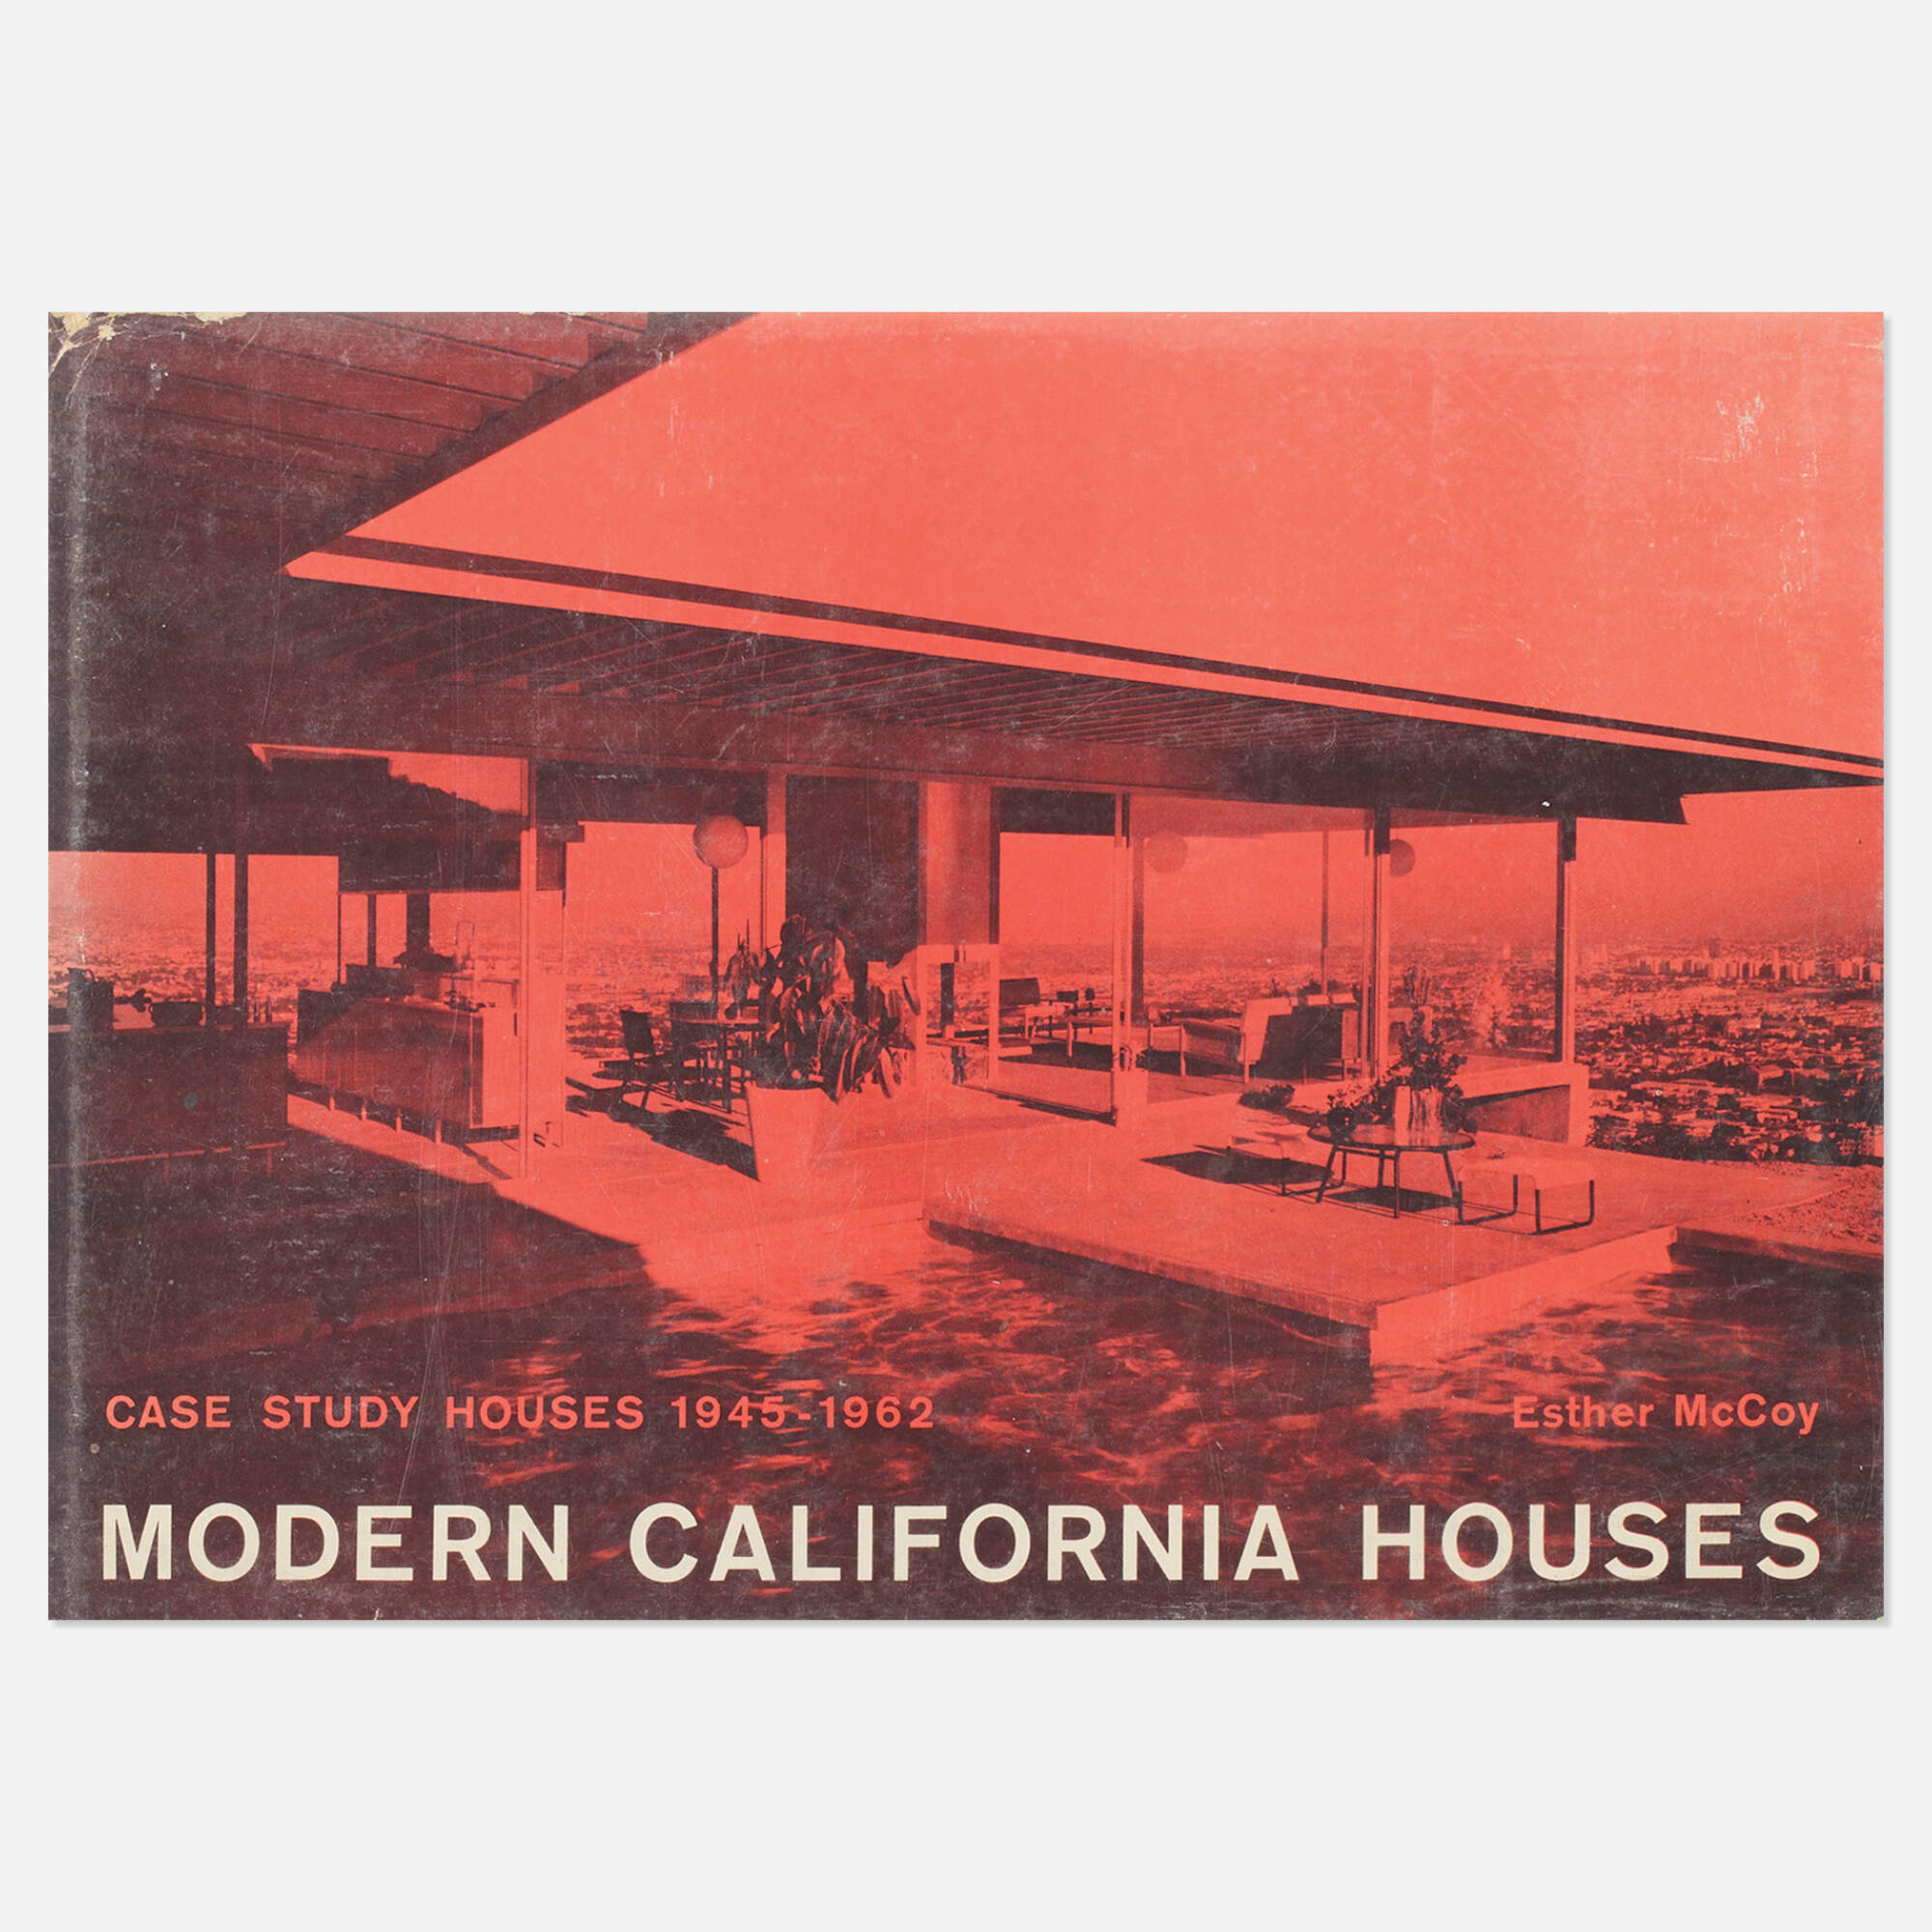 Case Study Houses 1945-1962 